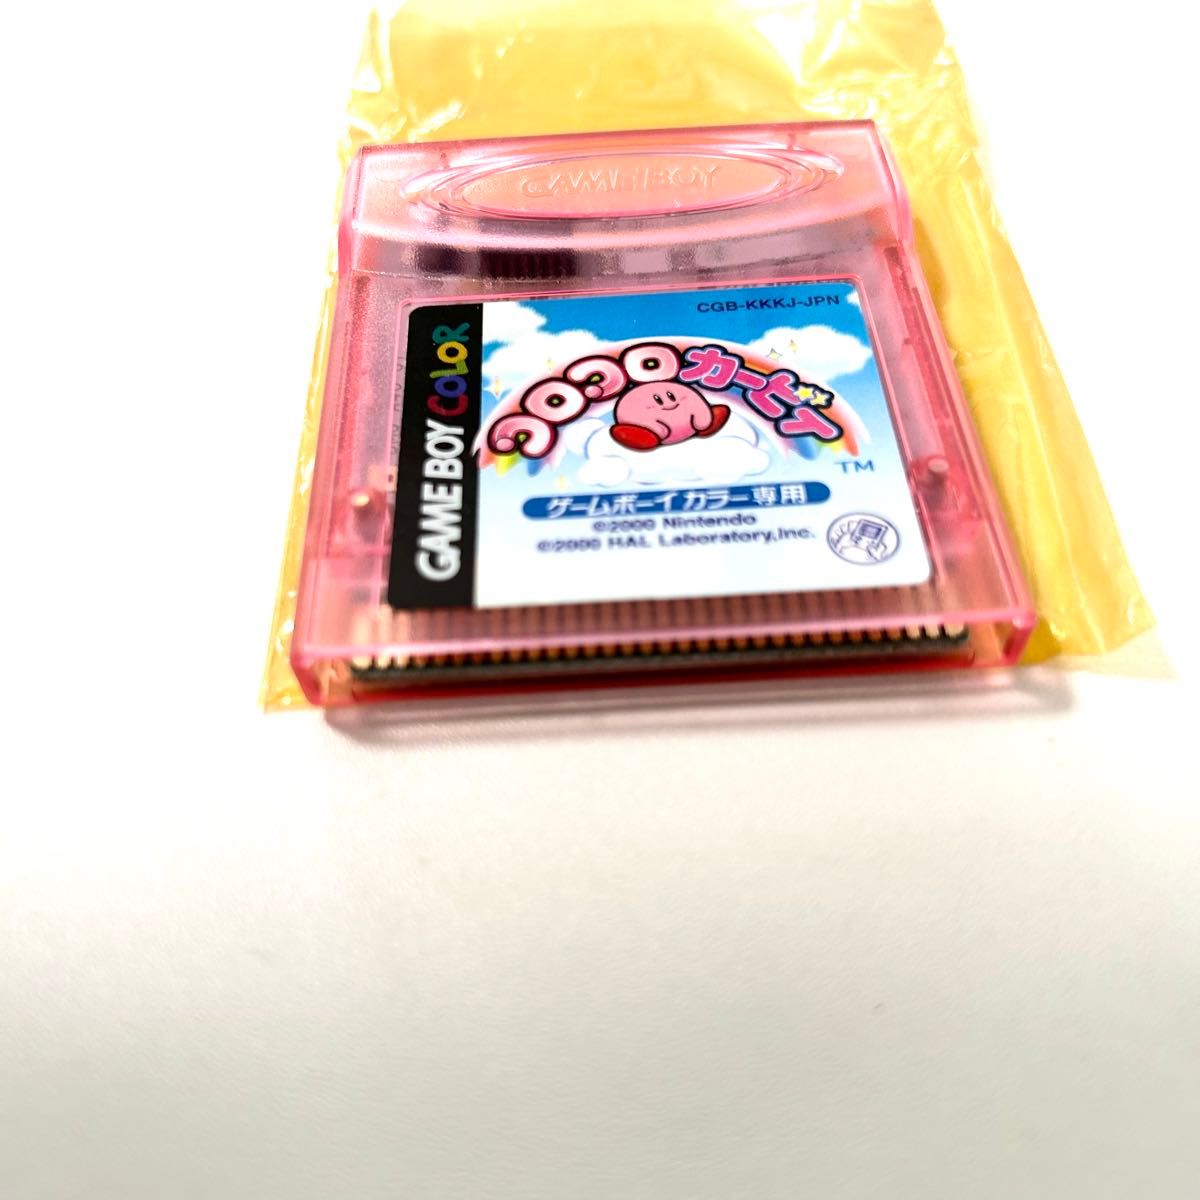 ゲームボーイカラー コロコロカービィ 星のカービィ Nintendo